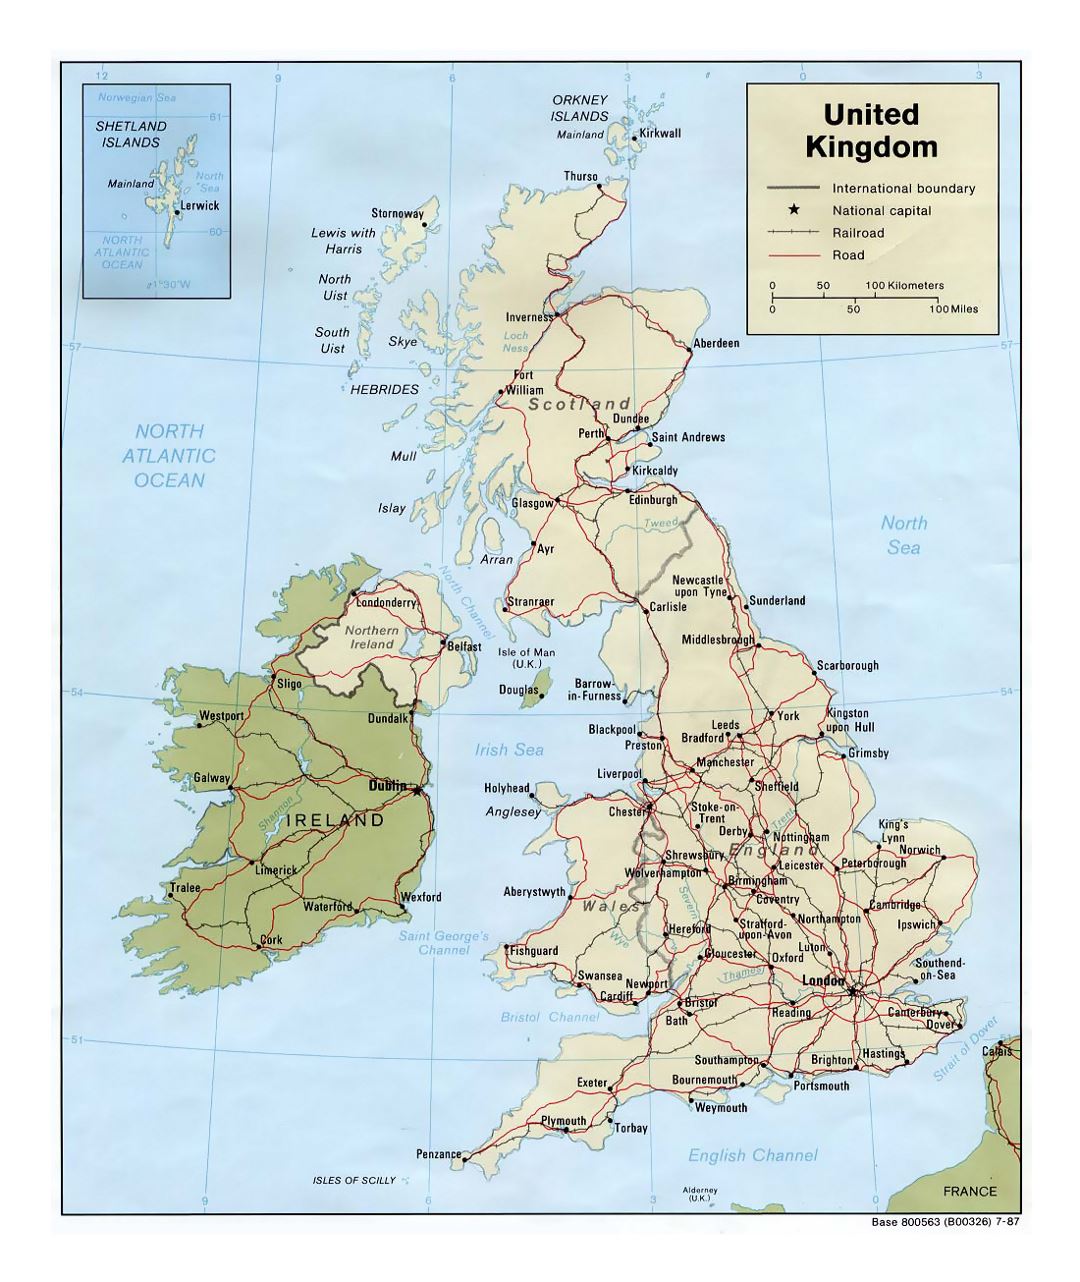 Detallado mapa político del Reino Unido con carreteras, ferrocarriles y ciudades principales - 1987